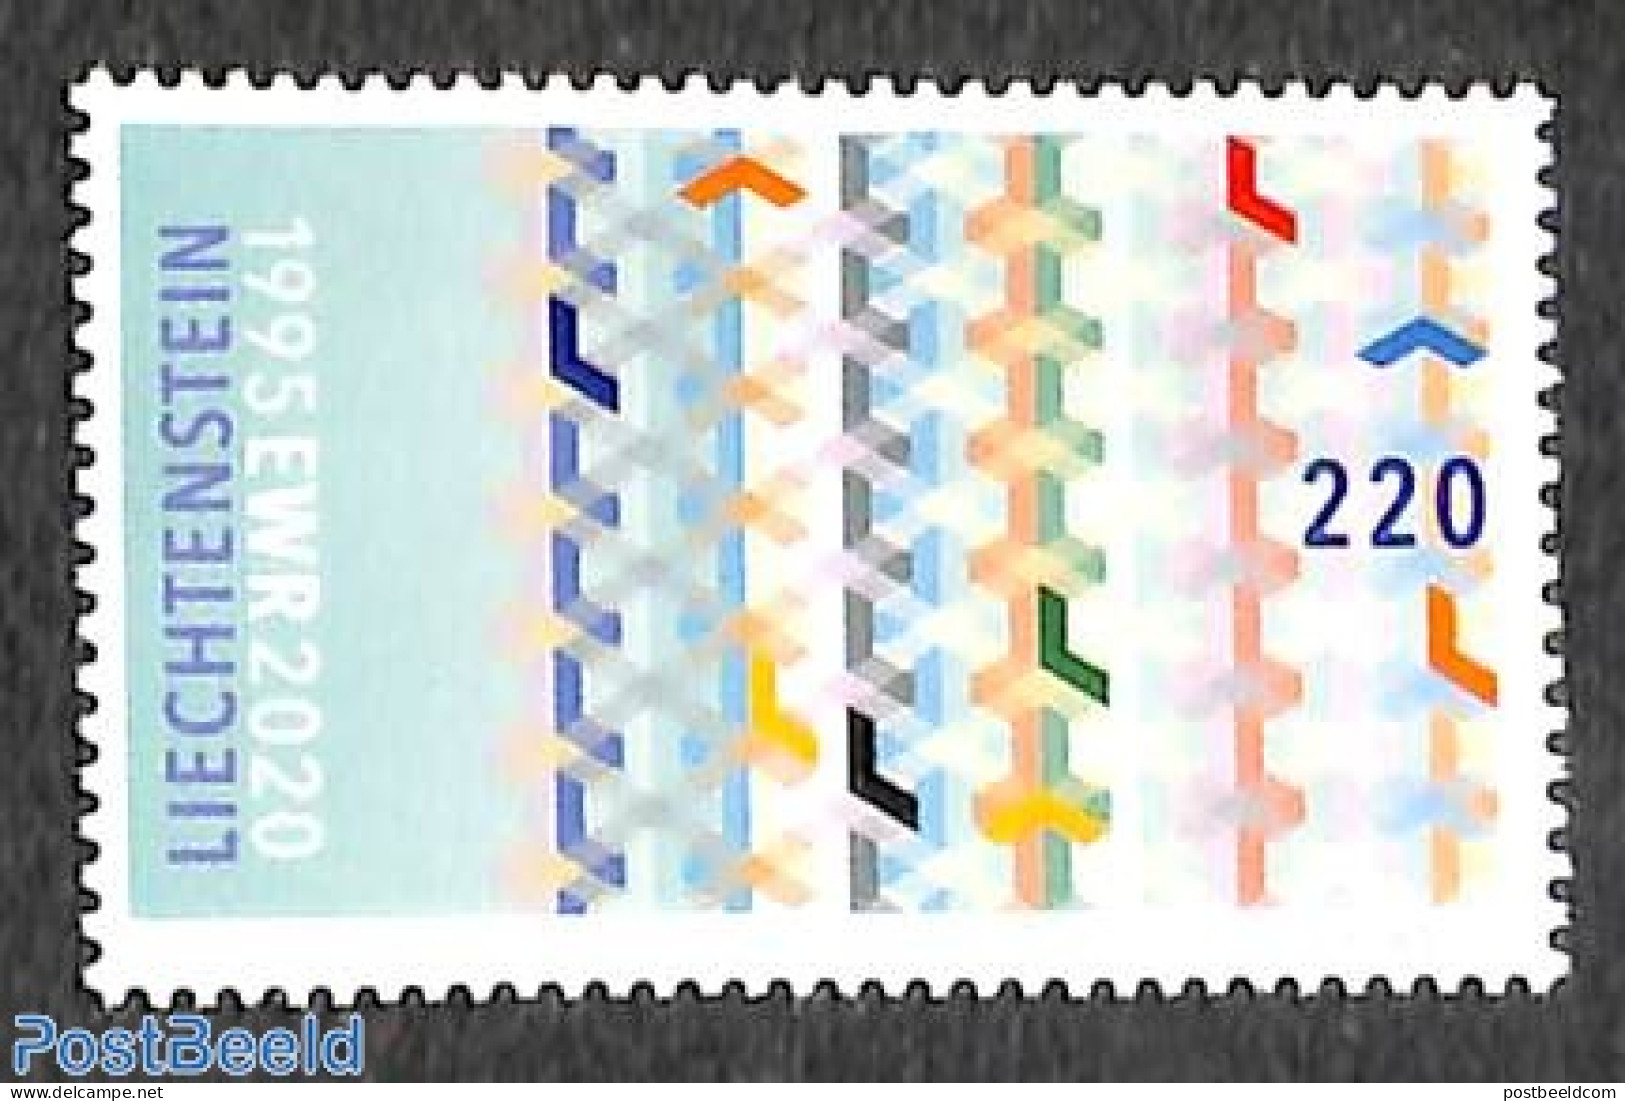 Liechtenstein 2021 EWR 1v, Mint NH - Unused Stamps